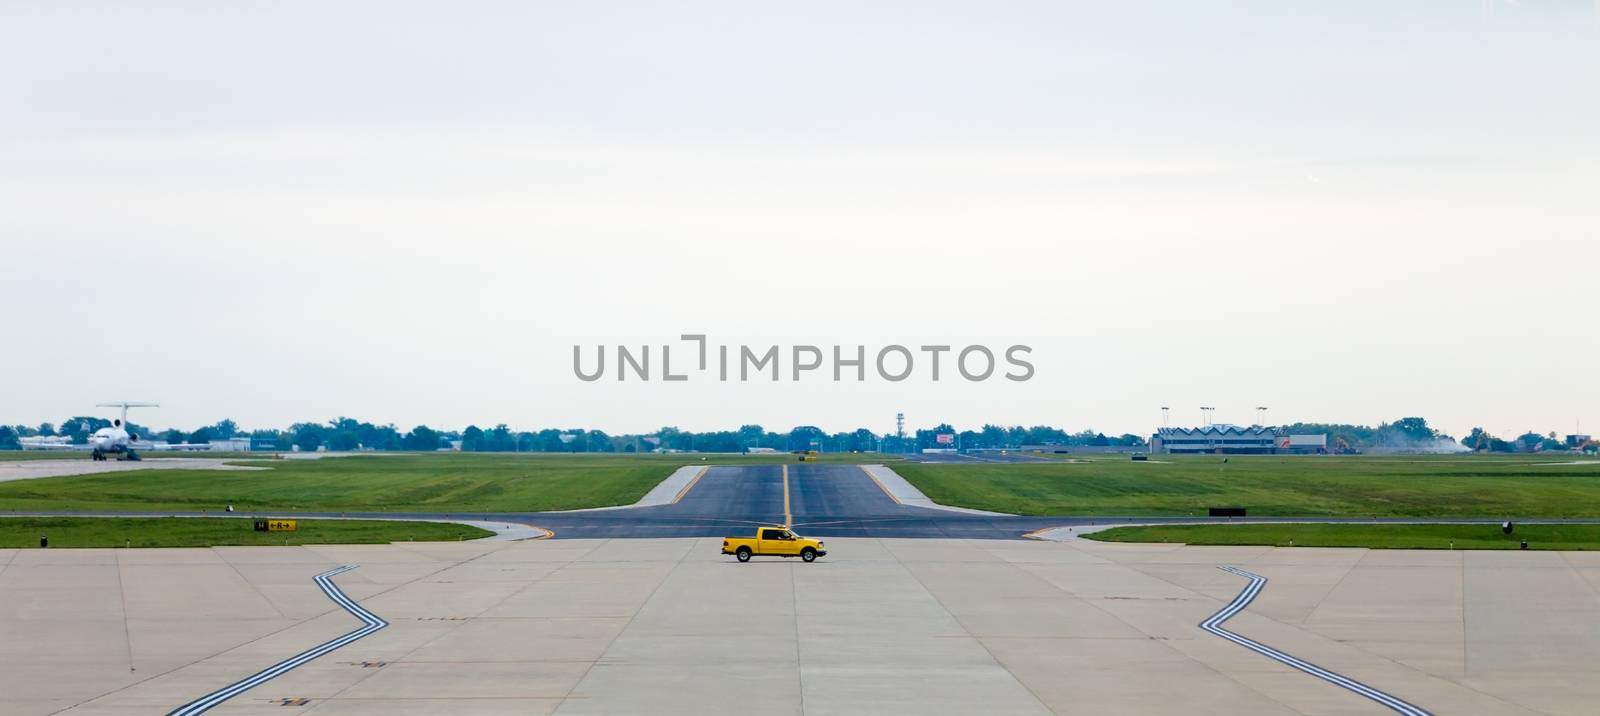 Airport Runway by coskun